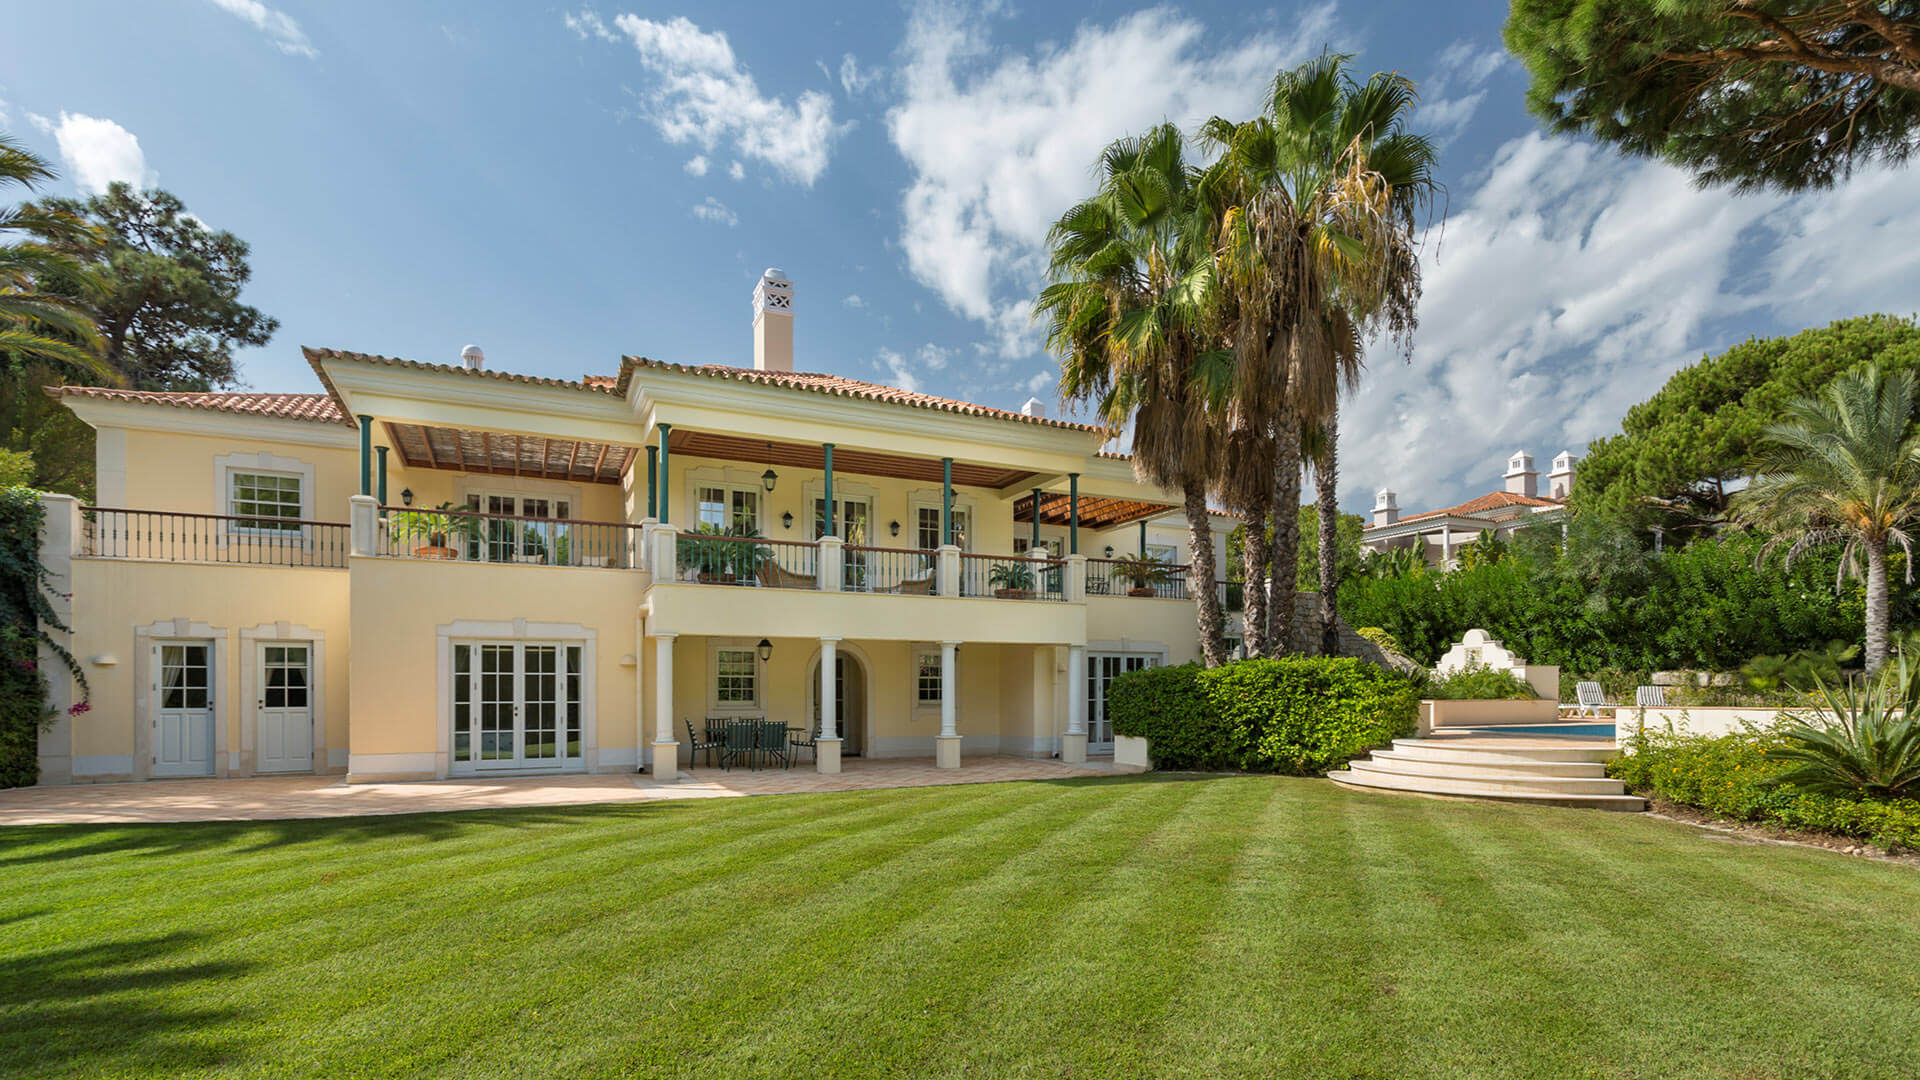 Villa Villa Noccila, Rental in Algarve